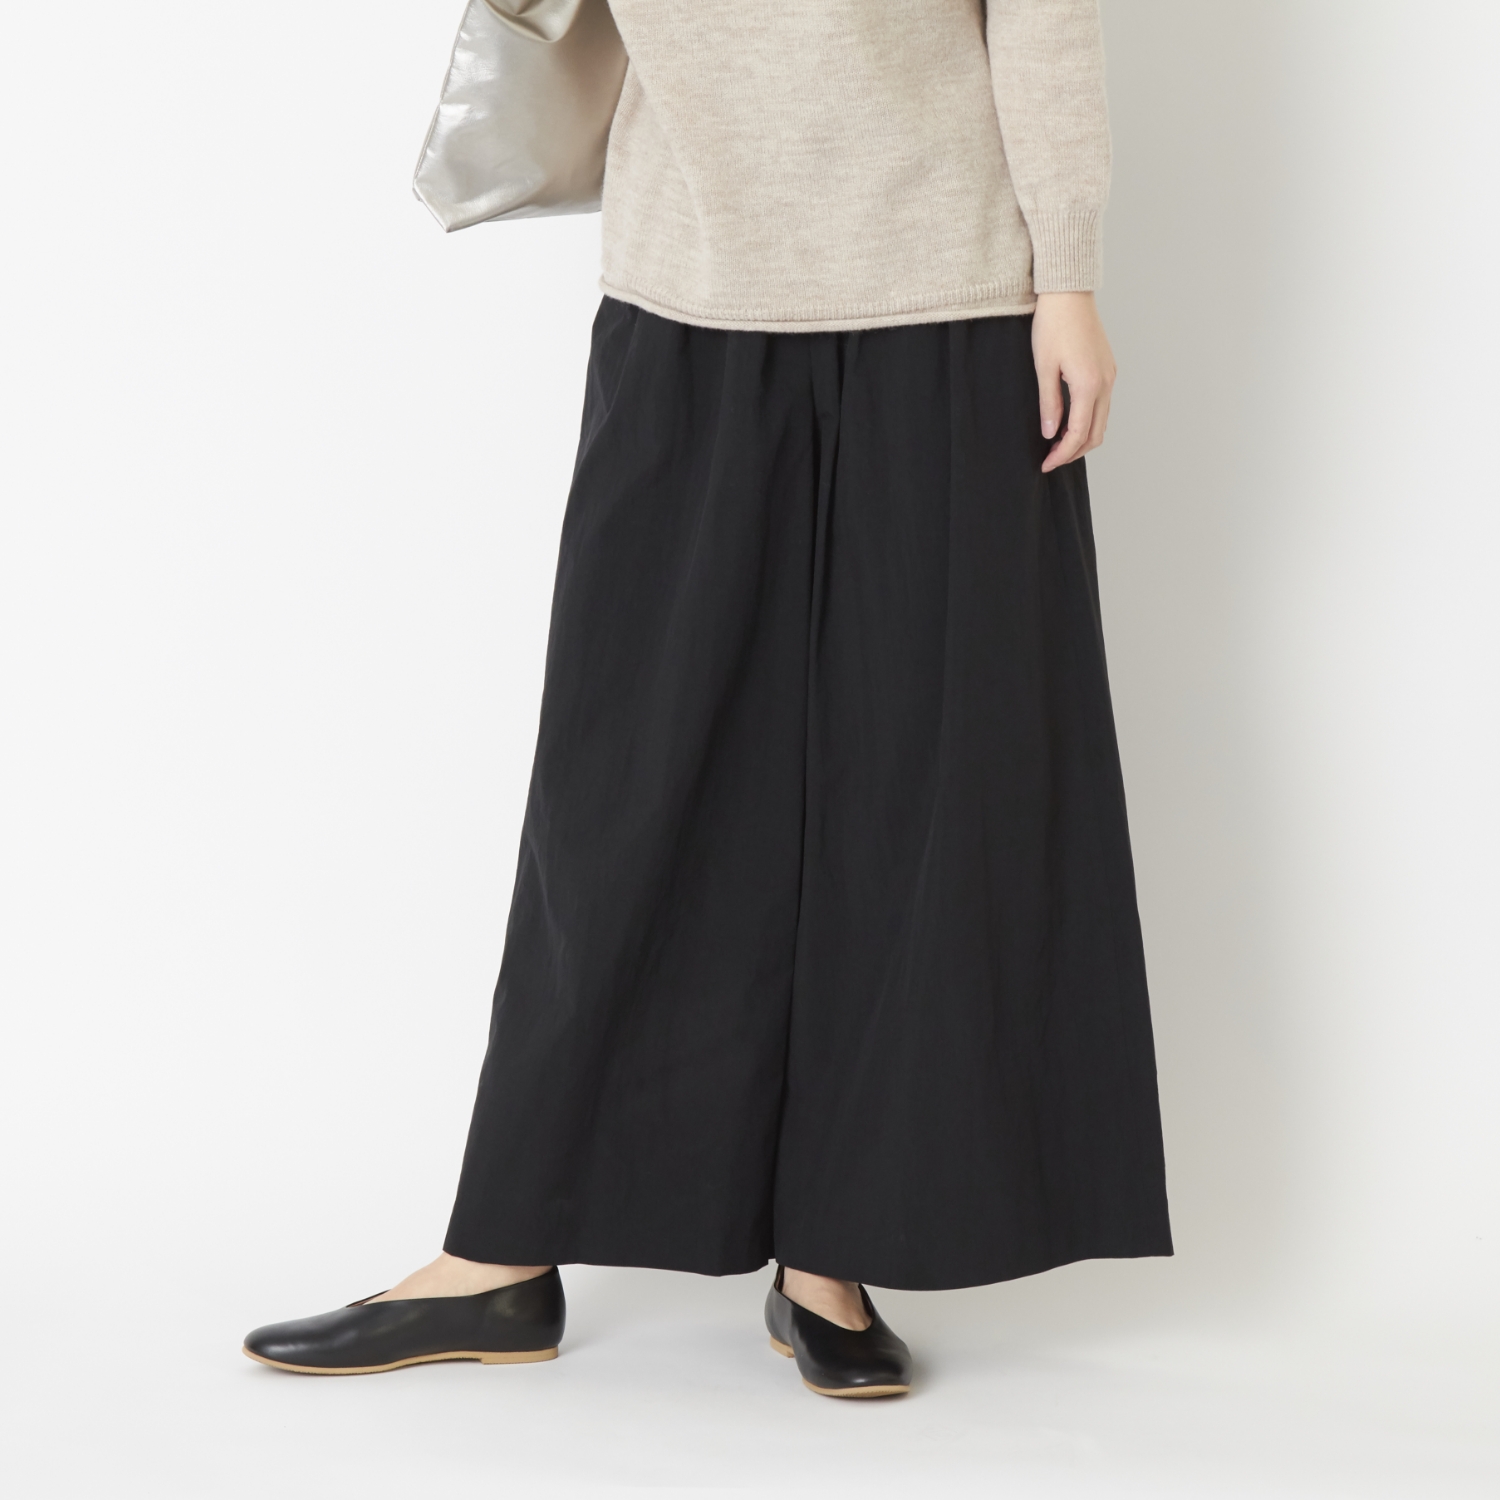 FANTASTICDAYS/ナイロンギャザーパンツ - シルエットが美しい、大人女性のためのスカートパンツ